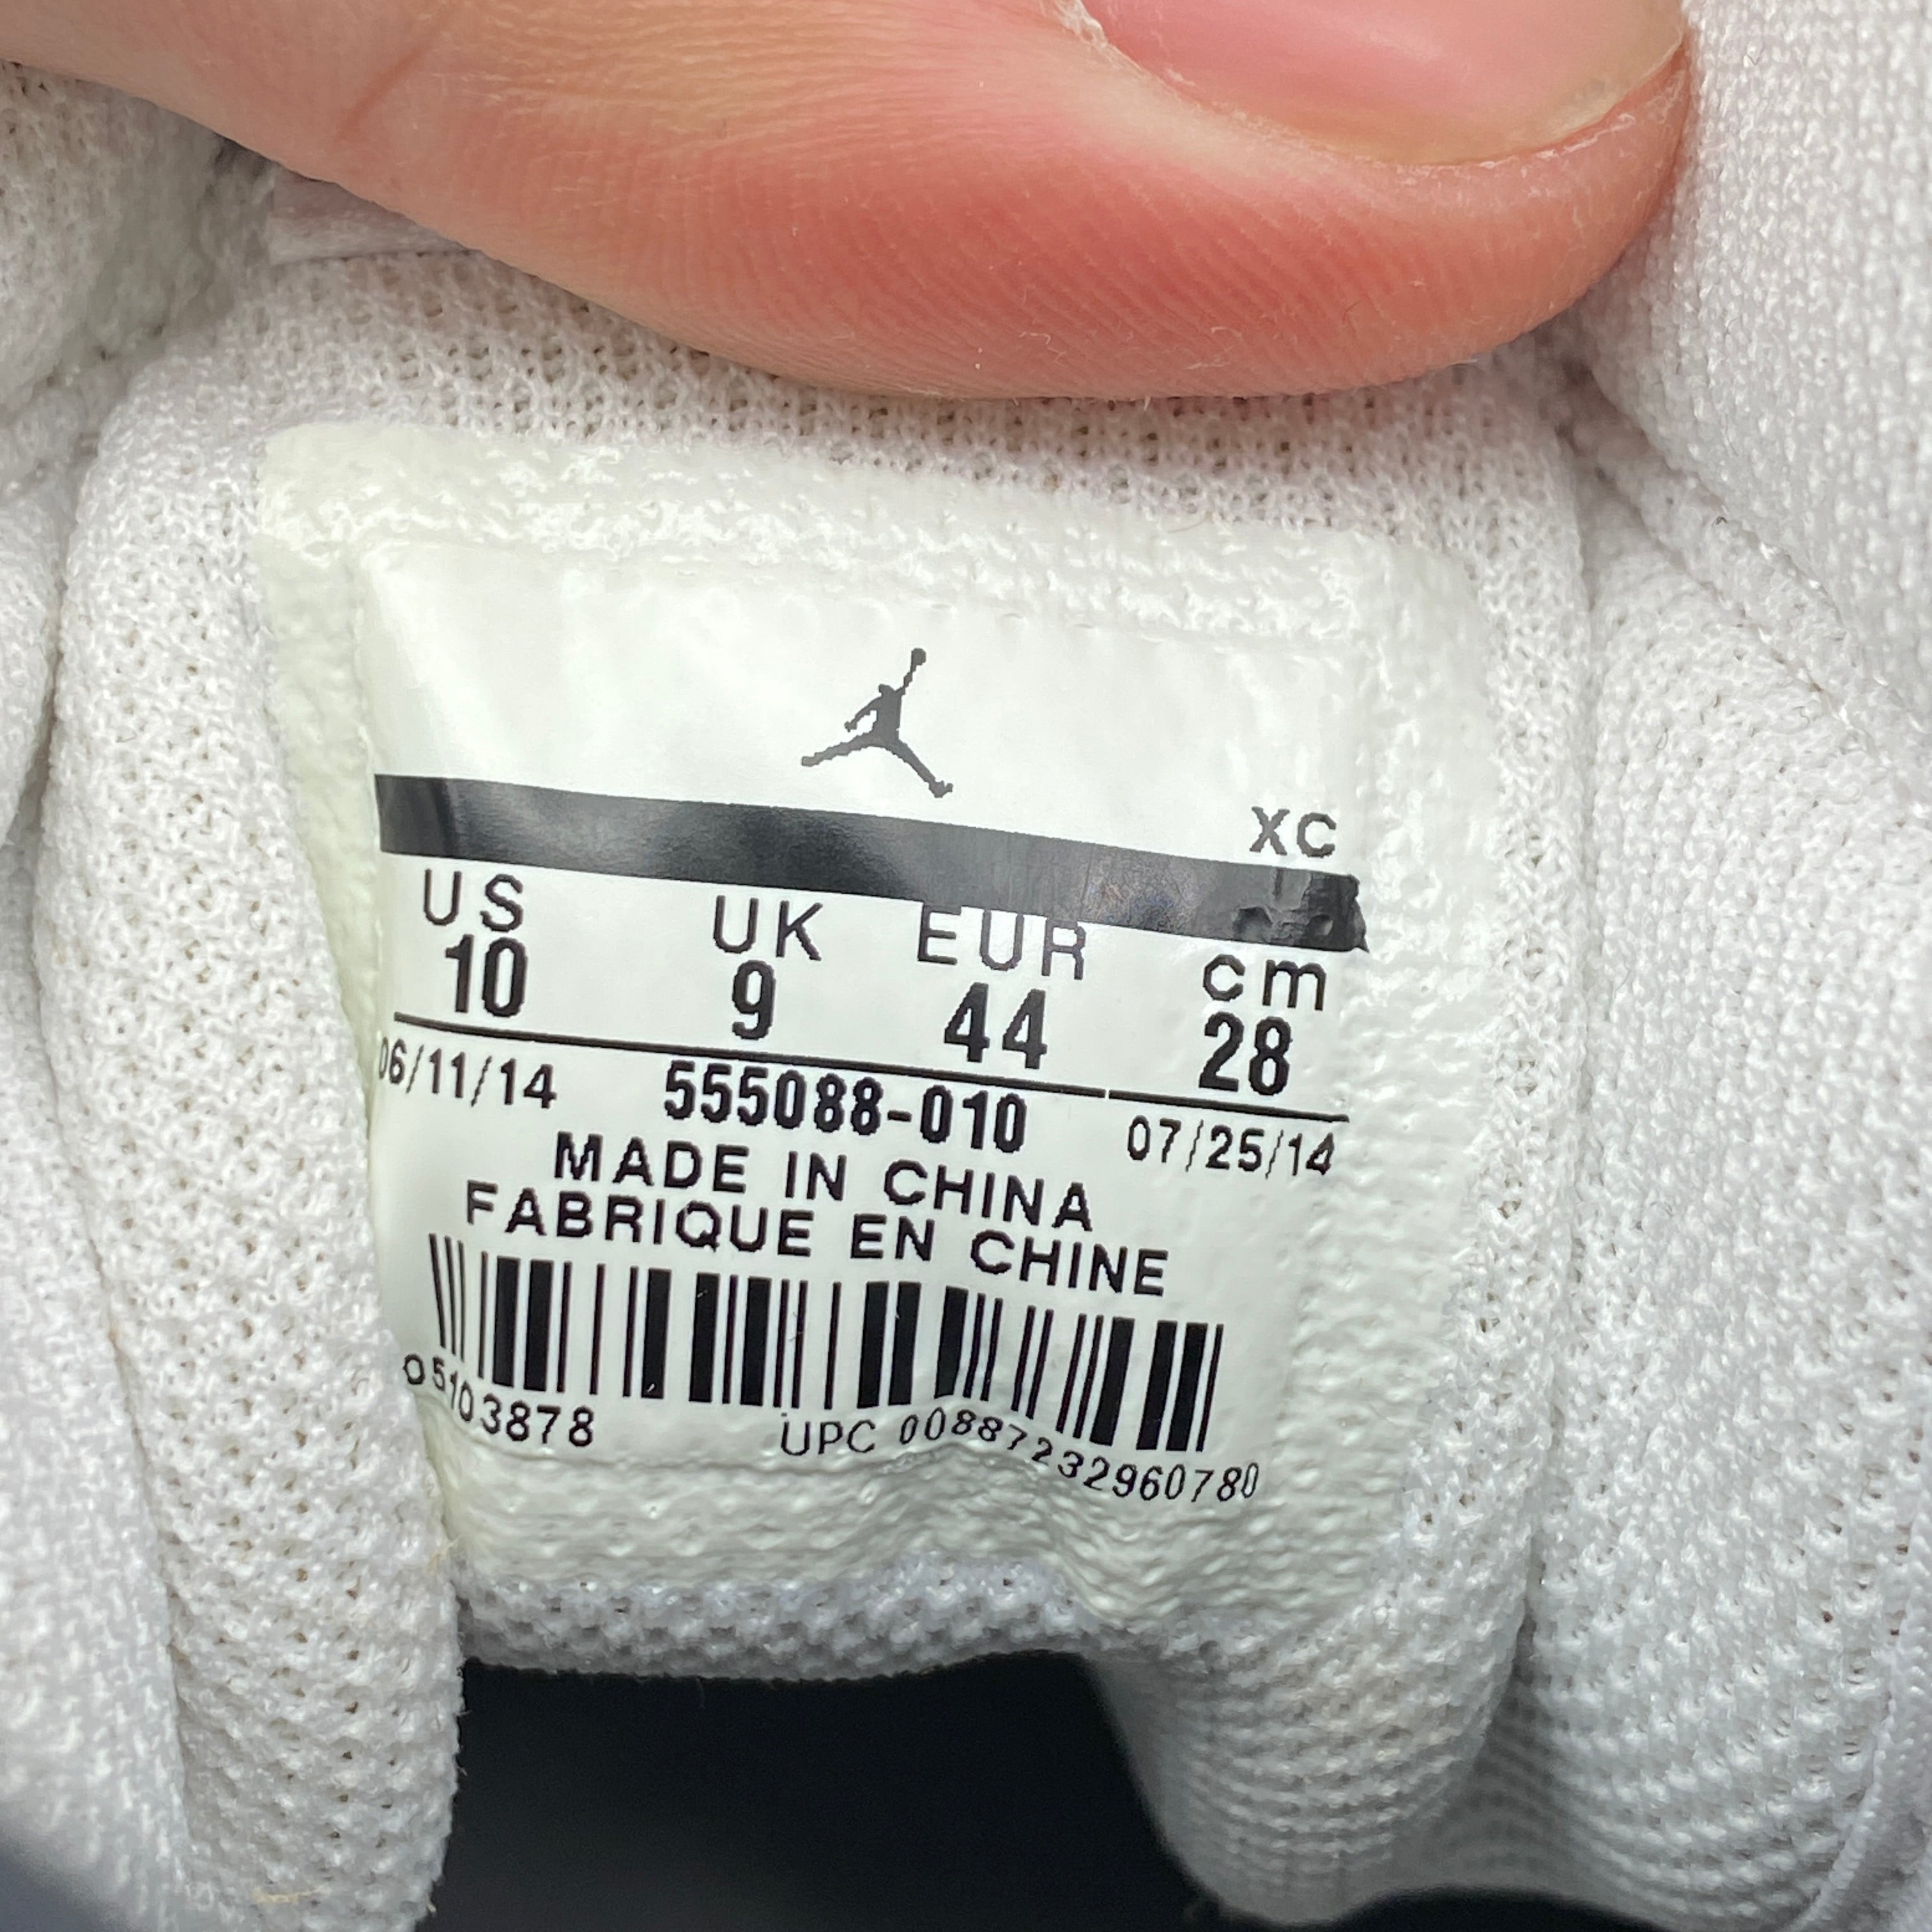 Air Jordan 1 Retro High OG &quot;Black White&quot; 2014 New Size 10